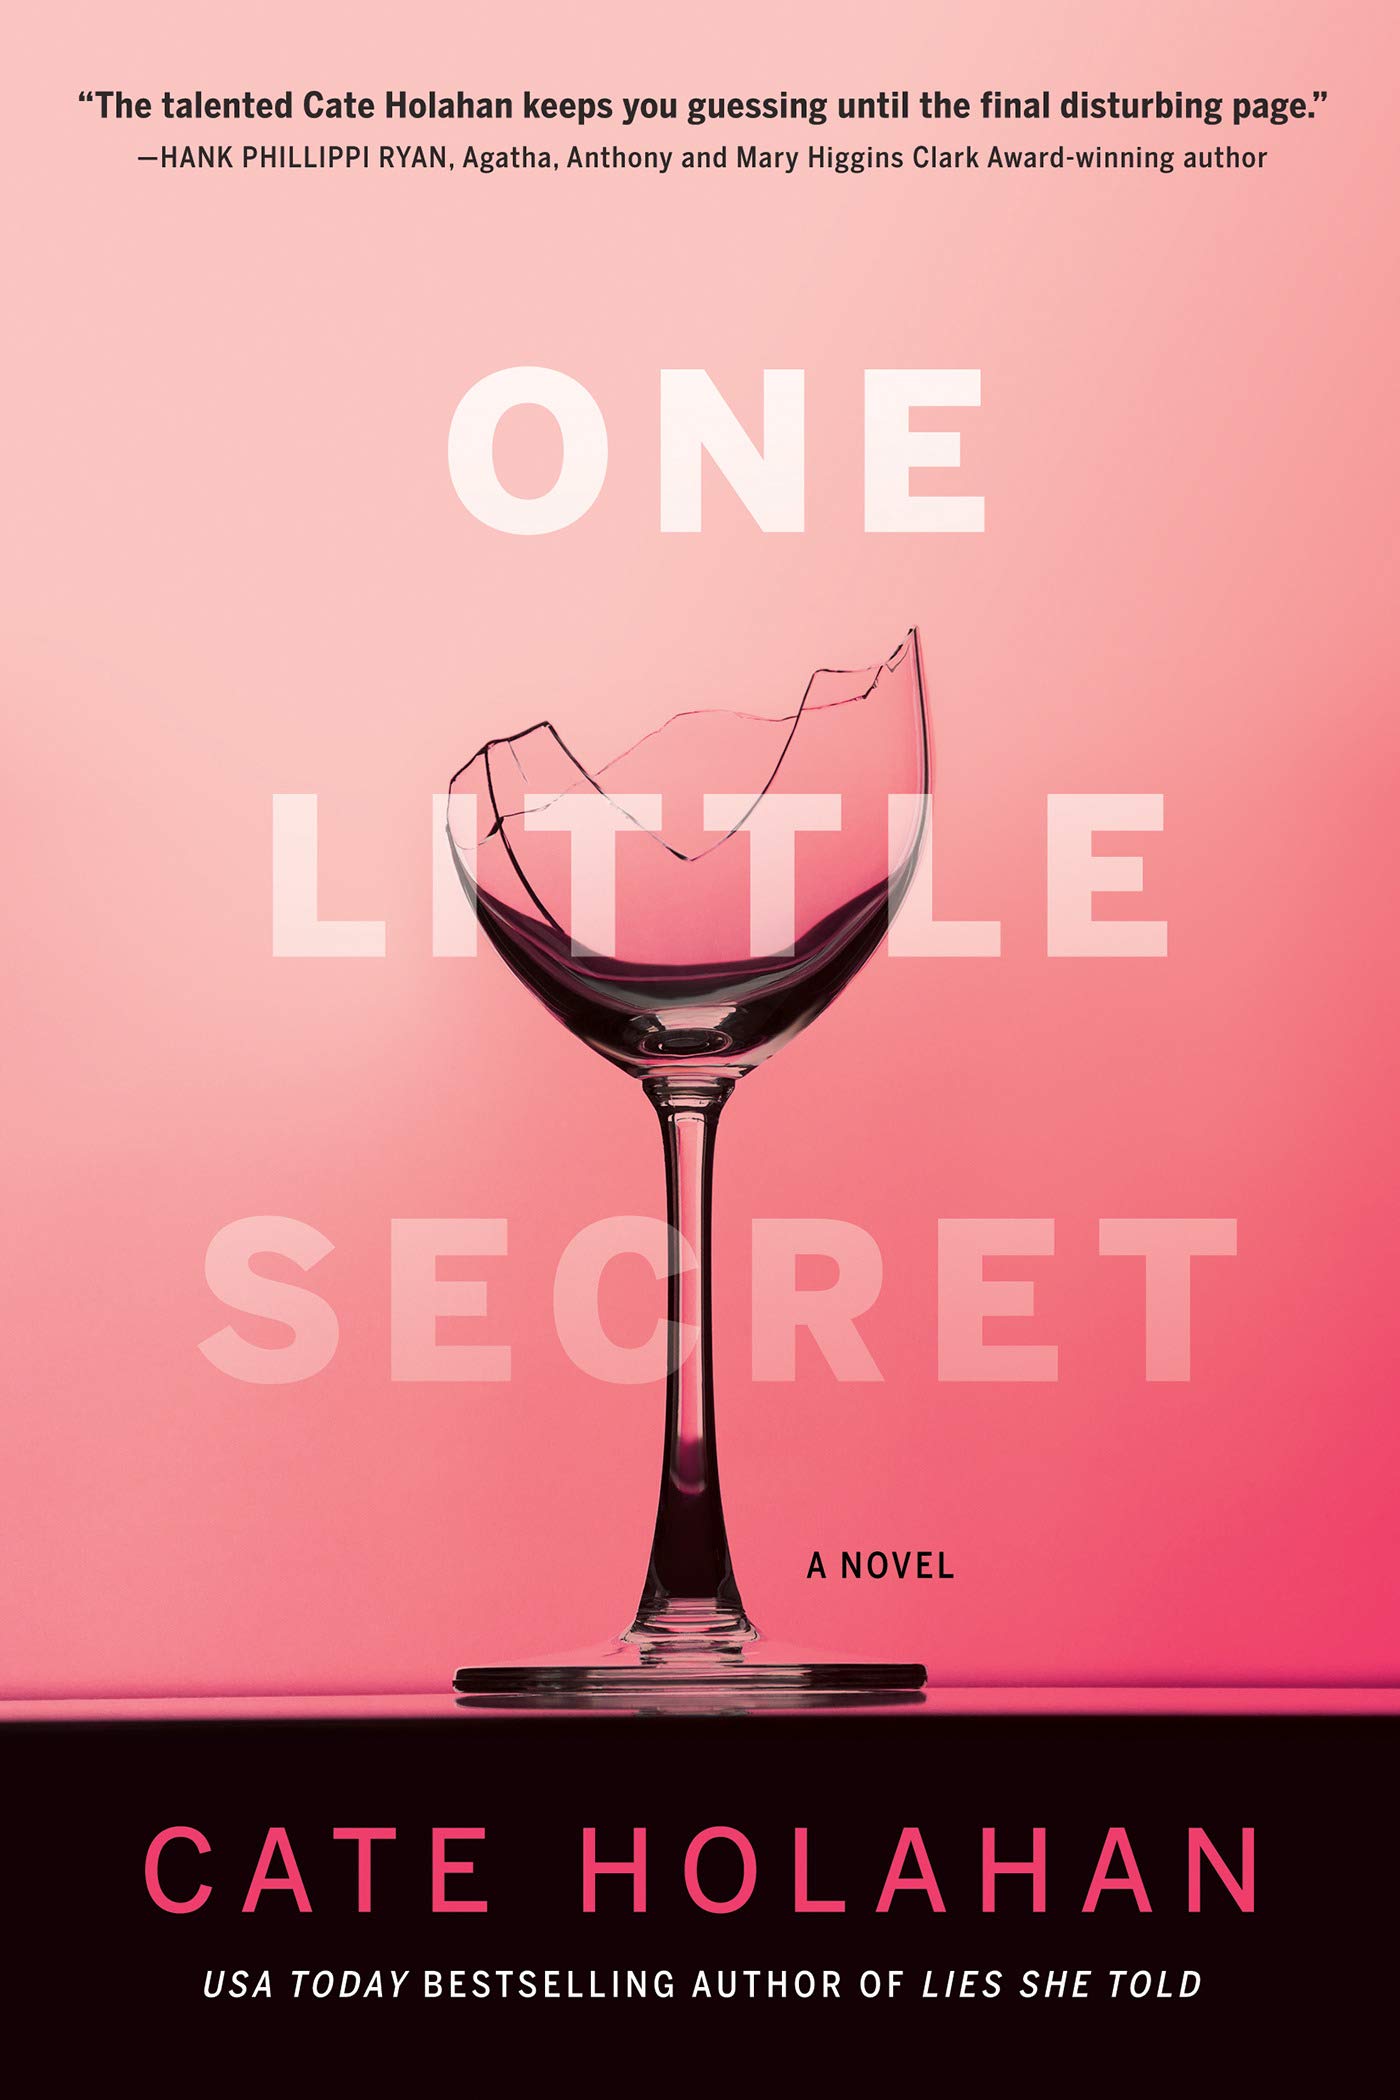 One Little Secret